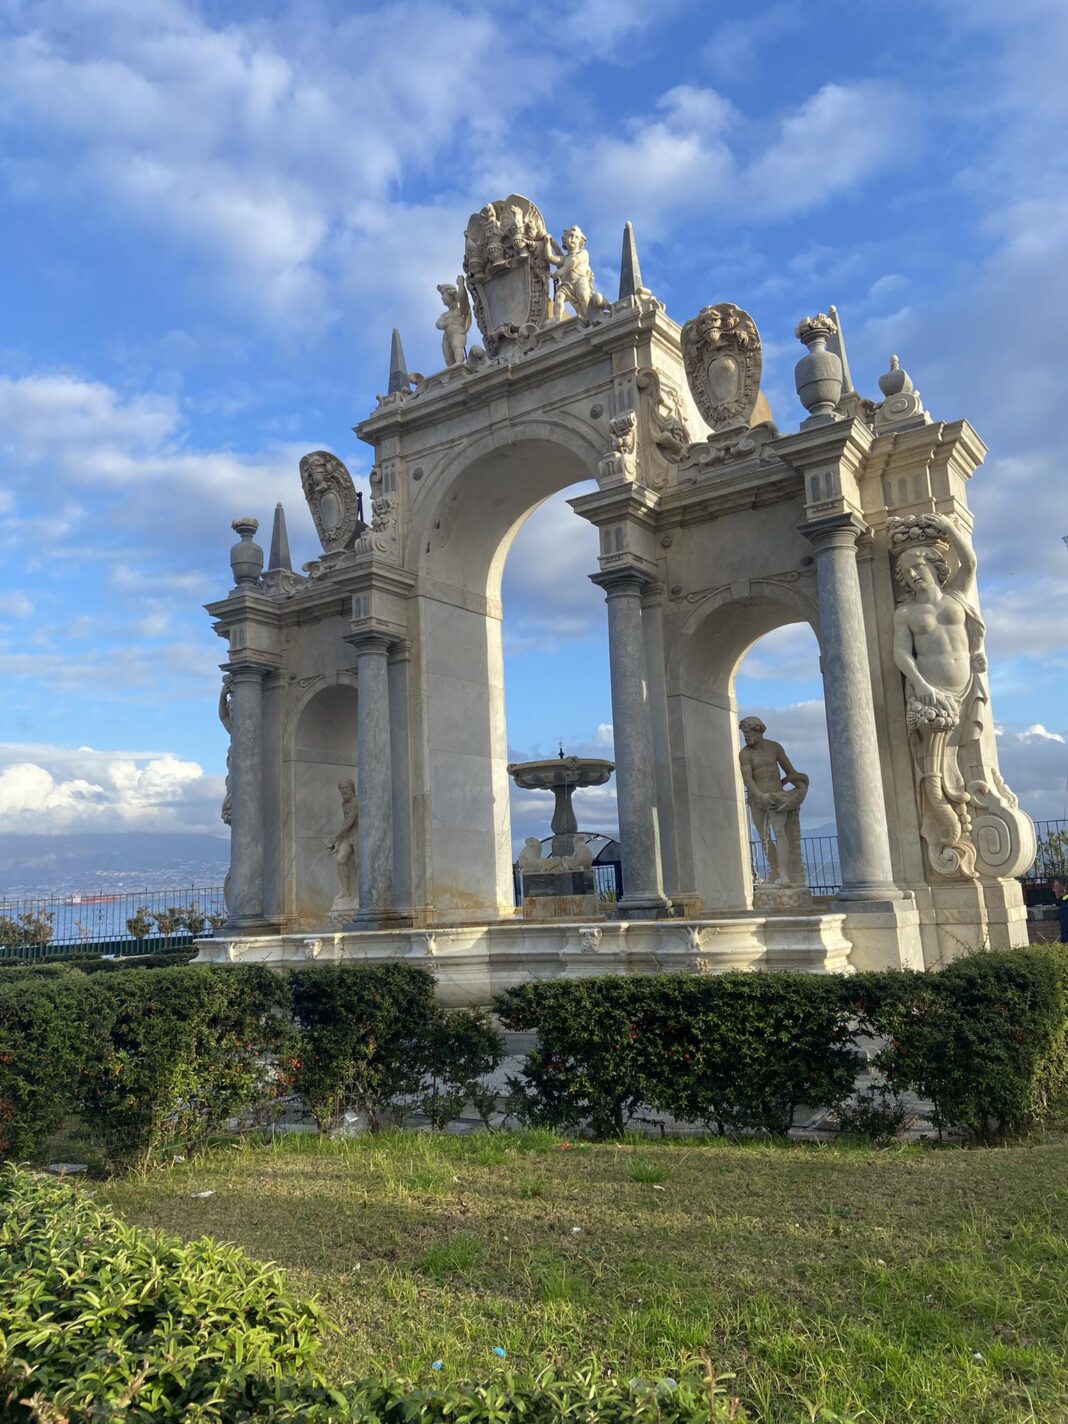 Fontane, Chiese, monumenti, le tante bellezze di Napoli